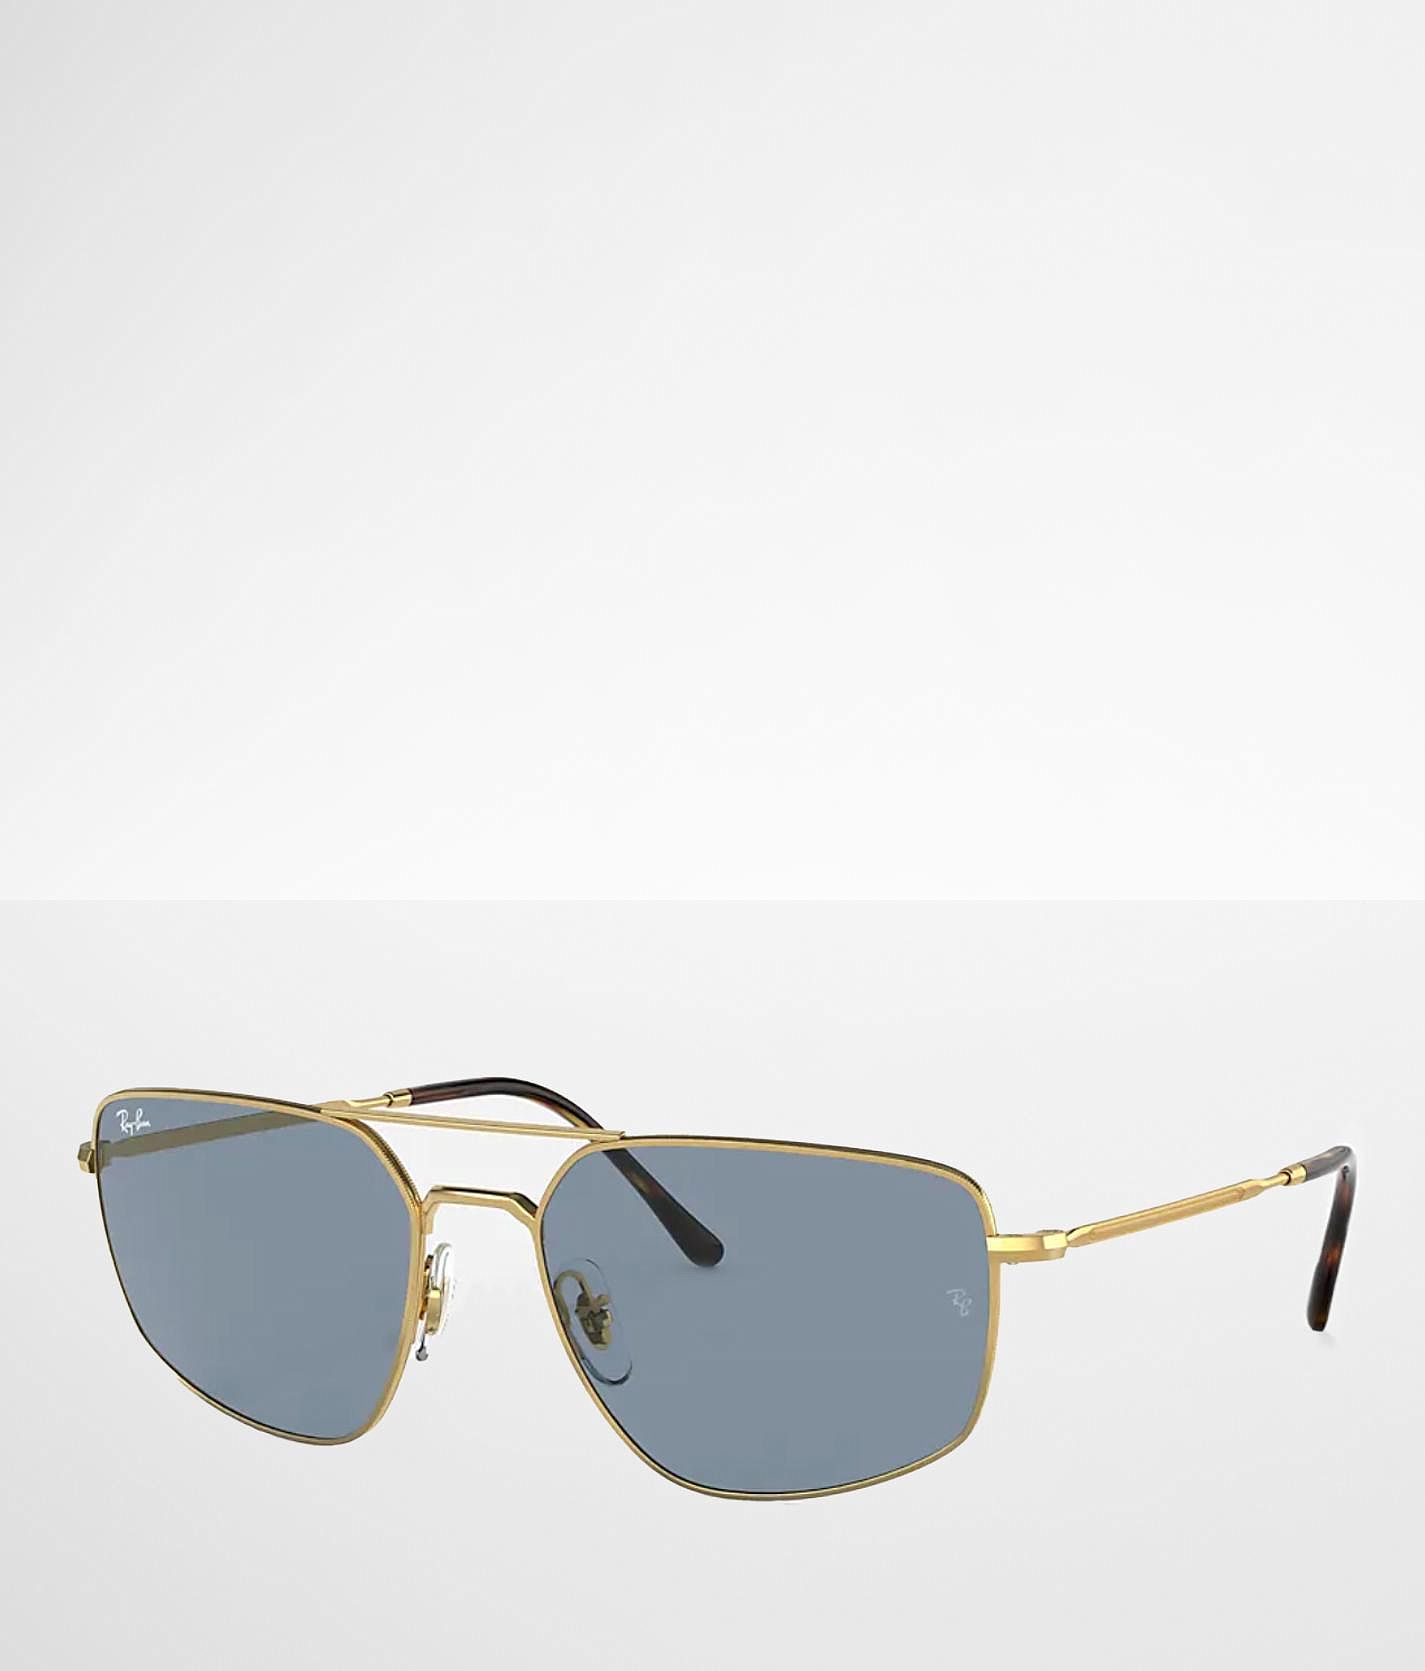 Ray-Ban® Arista Sunglasses - Women's Sunglasses & Glasses in 